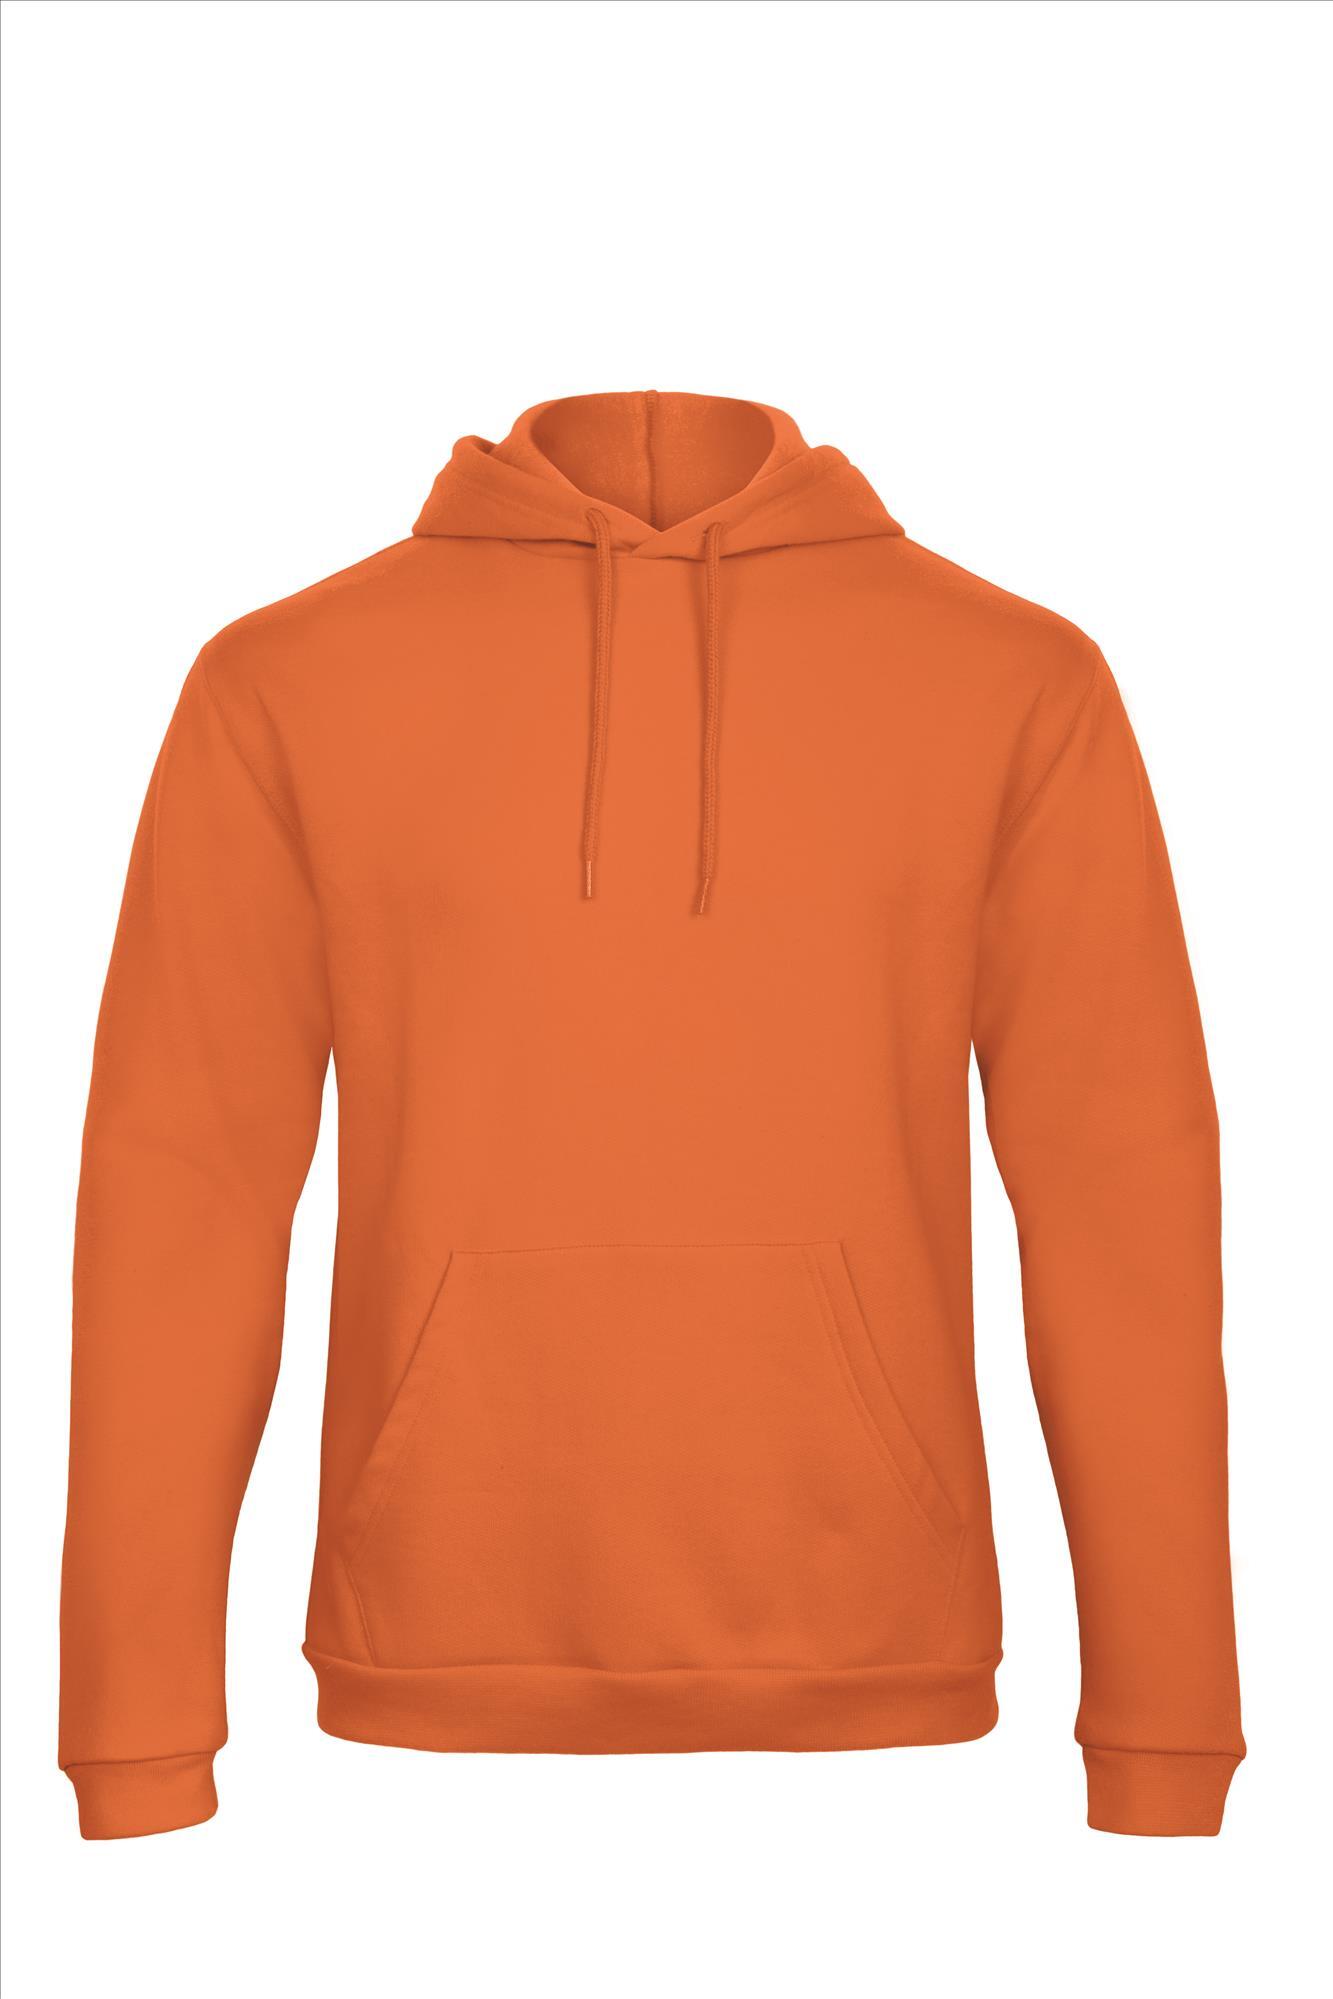 Oranje hoodie Sweatshirt Unisex met capuchon heren bedrukbaar